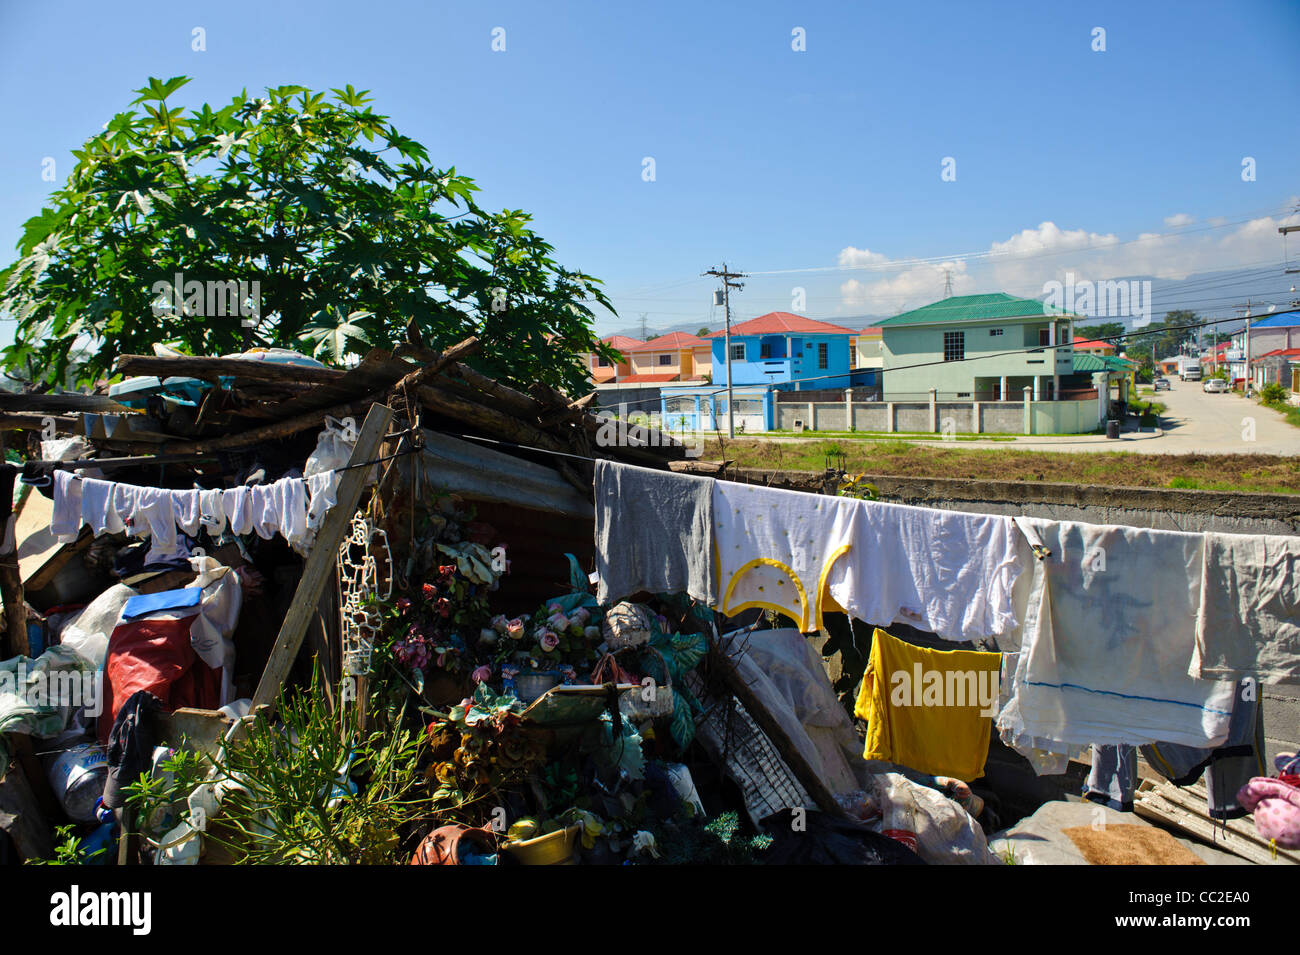 Une étude de contraste entre un barrio pauvres et la classe moyenne qui la borde à San Pedro Sula, Honduras Banque D'Images